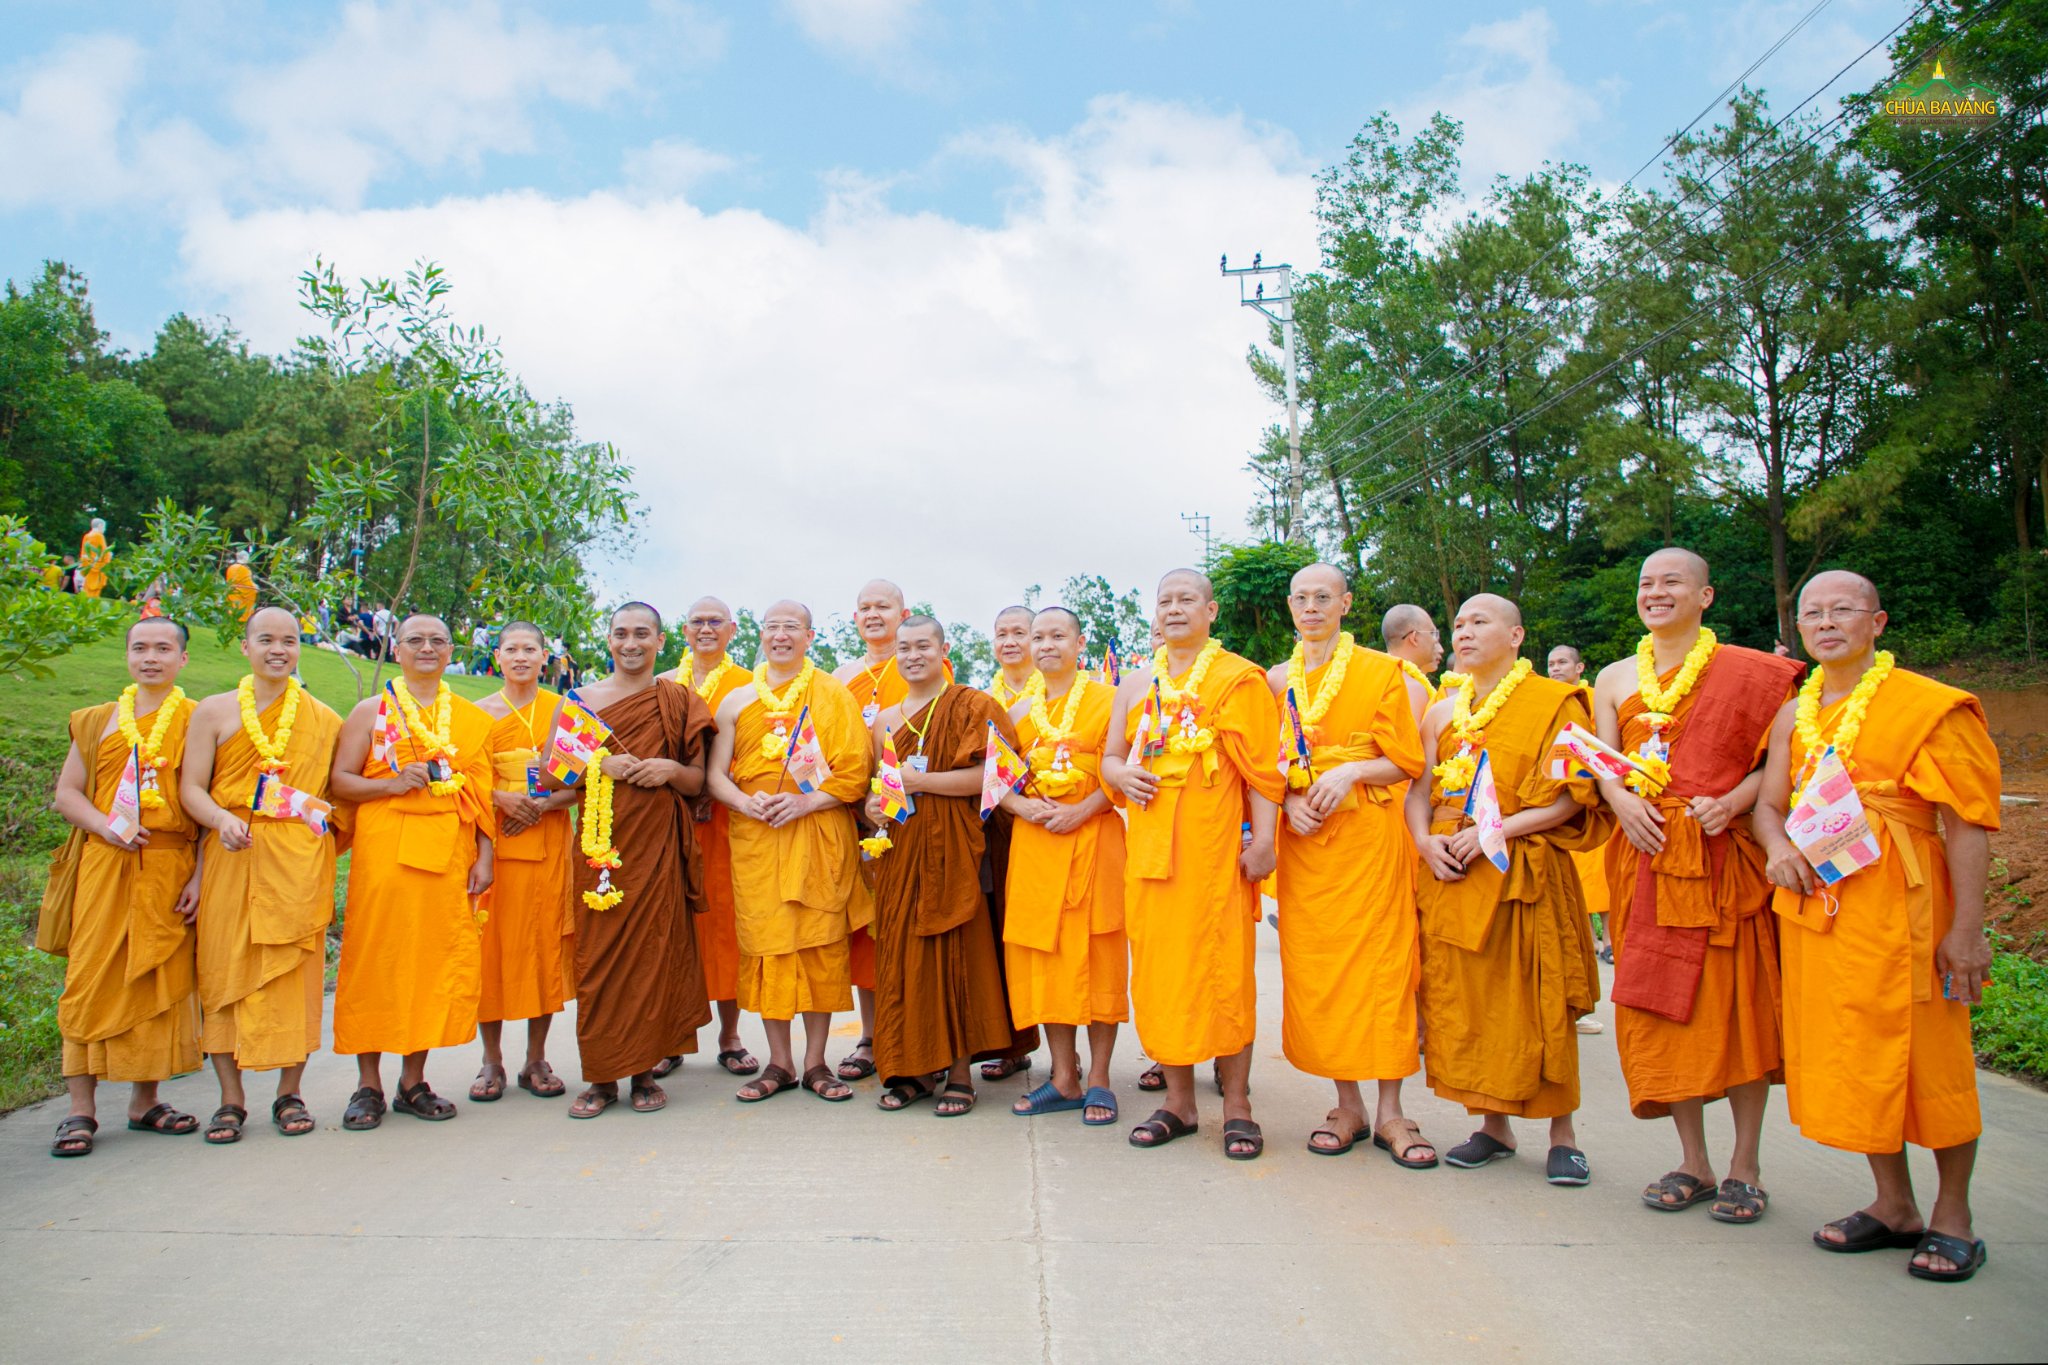 Sự hiện diện của chư Tăng các hệ phái cùng chư Tăng đến từ nhiều nước khác nhau tại Đại lễ Phật đản chùa Ba Vàng chính là minh chứng khẳng định tinh thần hòa hợp của đạo Phật